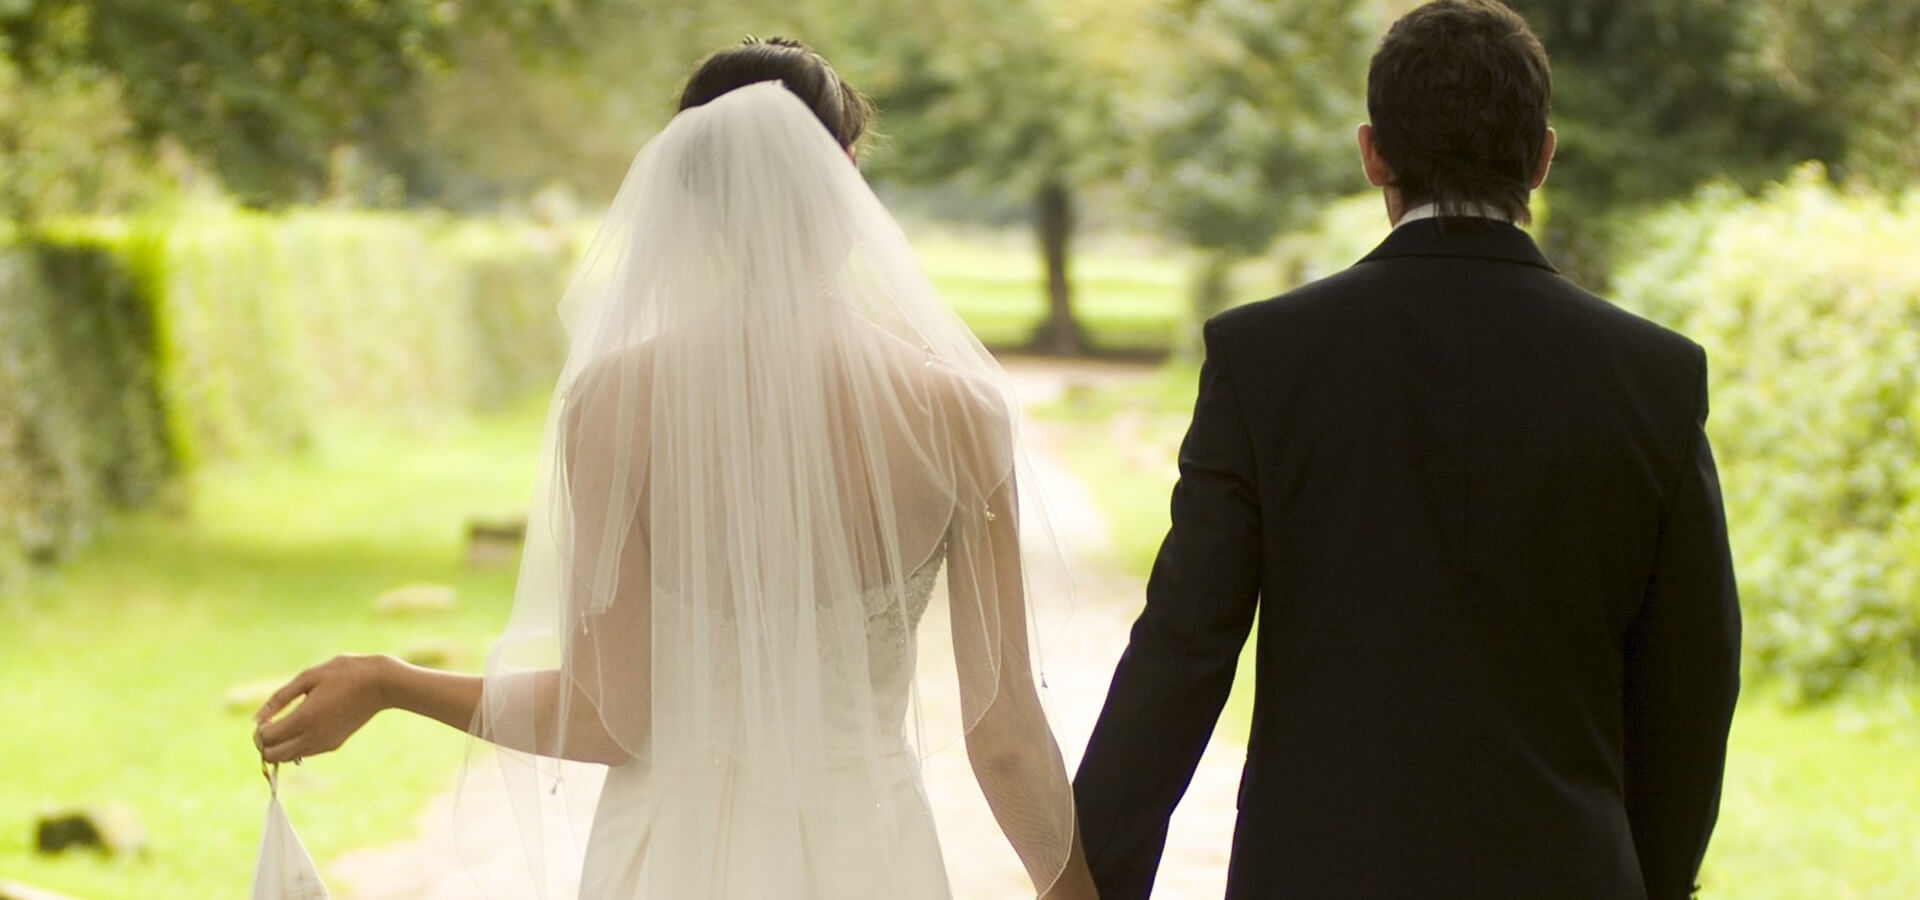 10 правил, которые помогут организовать идеальную свадьбу